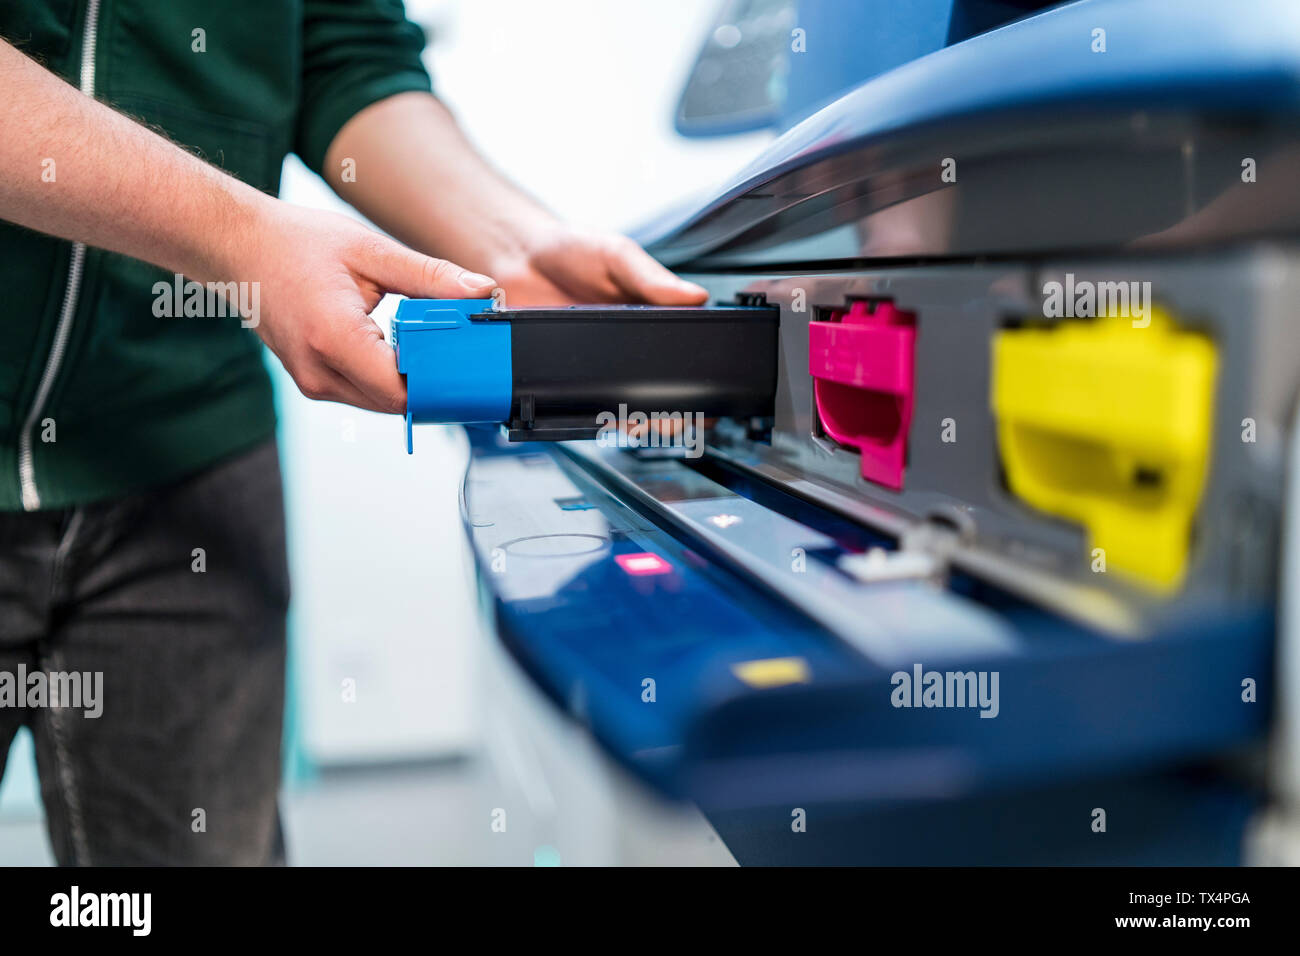 Close-up of adolescent travaillant à l'insertion de cartouche d'imprimante couleur Banque D'Images